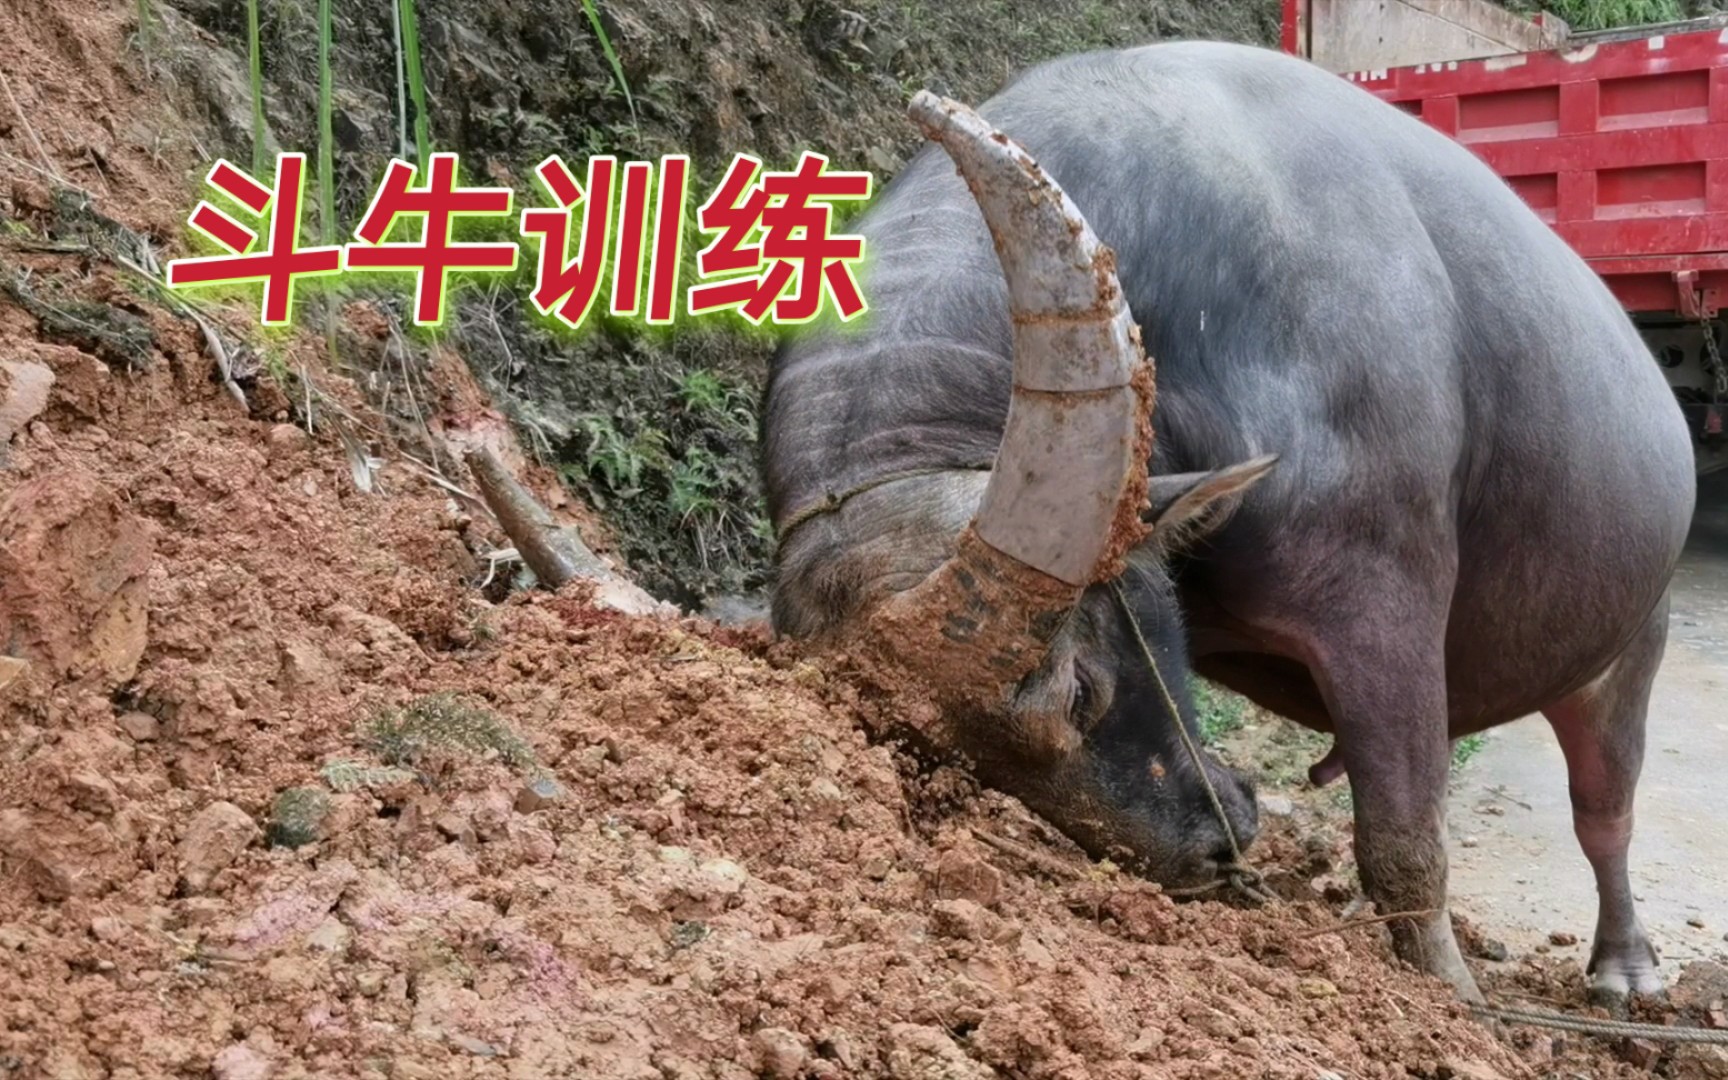 长见识了，贵州小伙带网友看斗牛是如何喂养的，难怪那么壮实威猛！